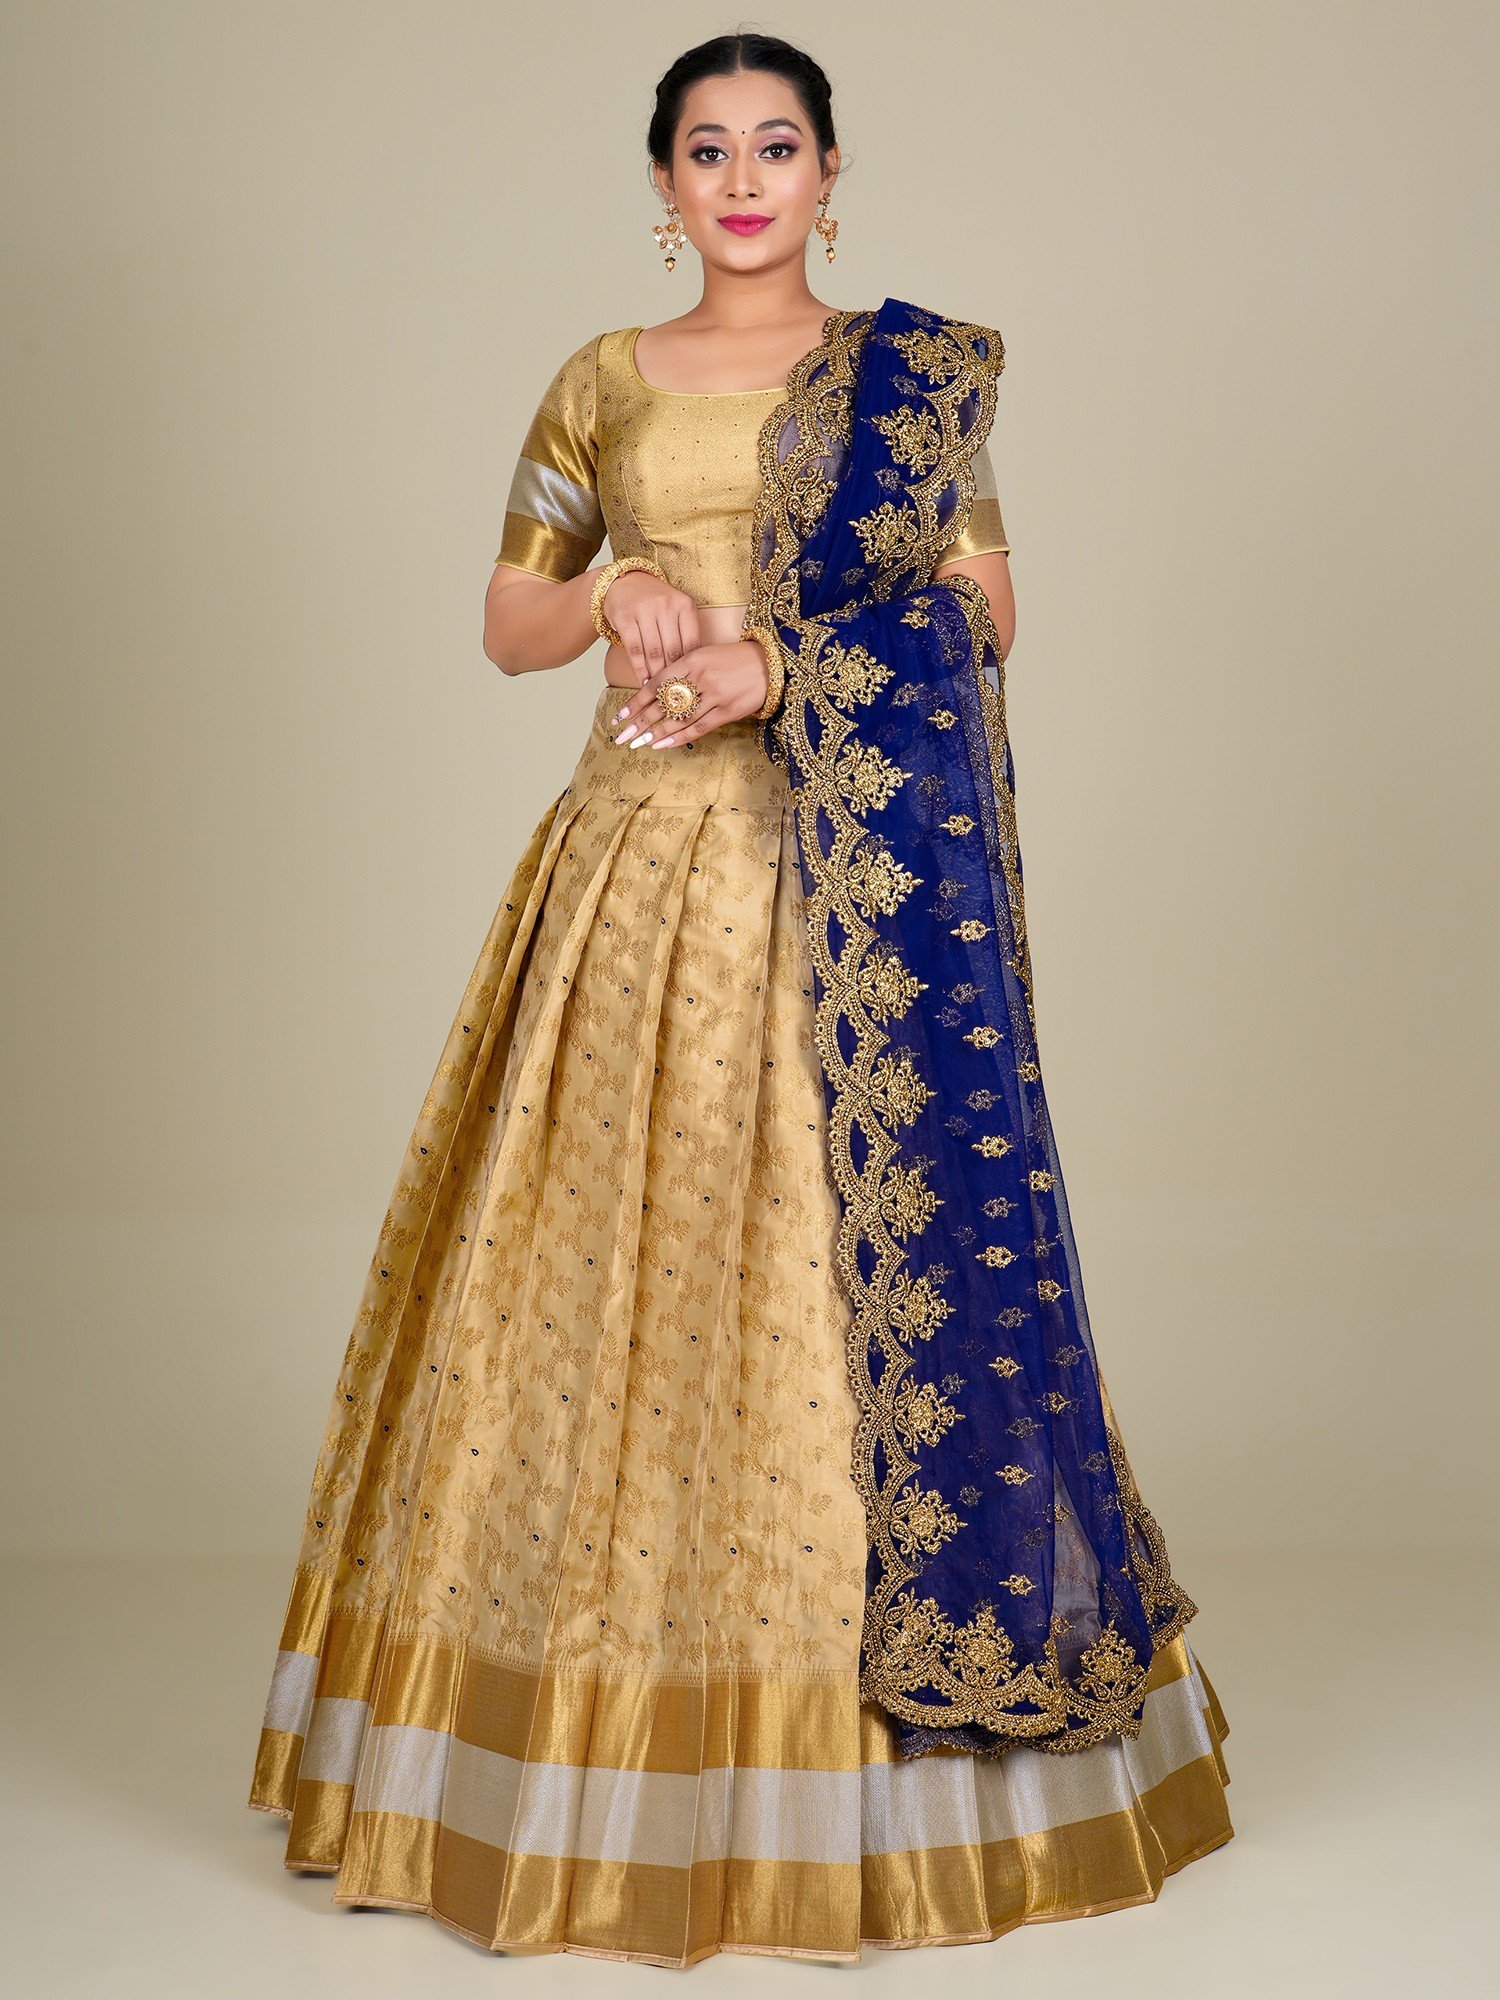 40 Elegant Half Saree Lehenga Designs For The South Indian Brides! | Half  saree lehenga, Pink half sarees, Half saree designs